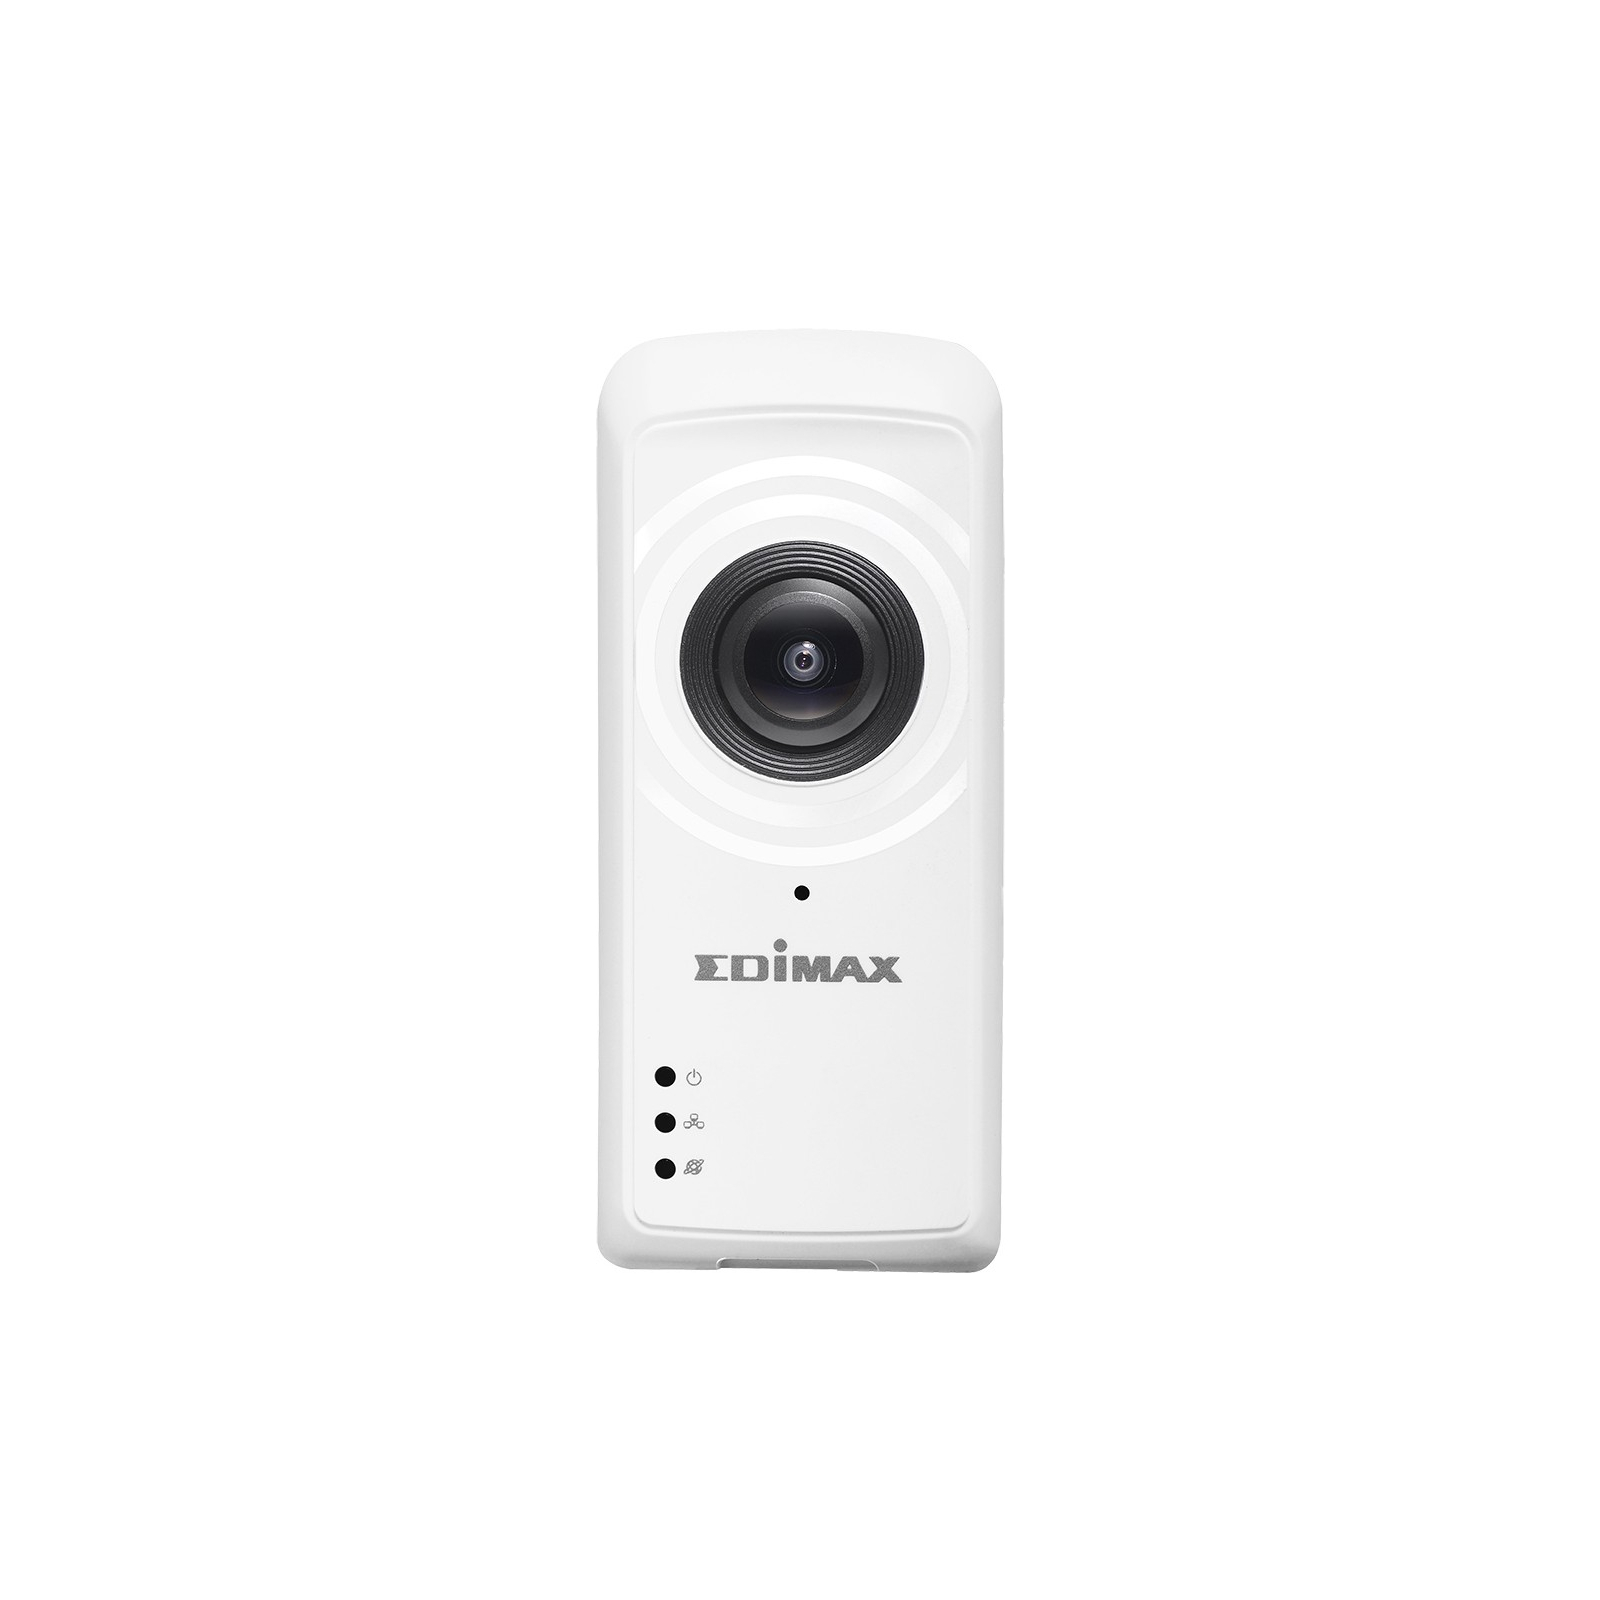 Камера видеонаблюдения Edimax IC-5150W изображение 2